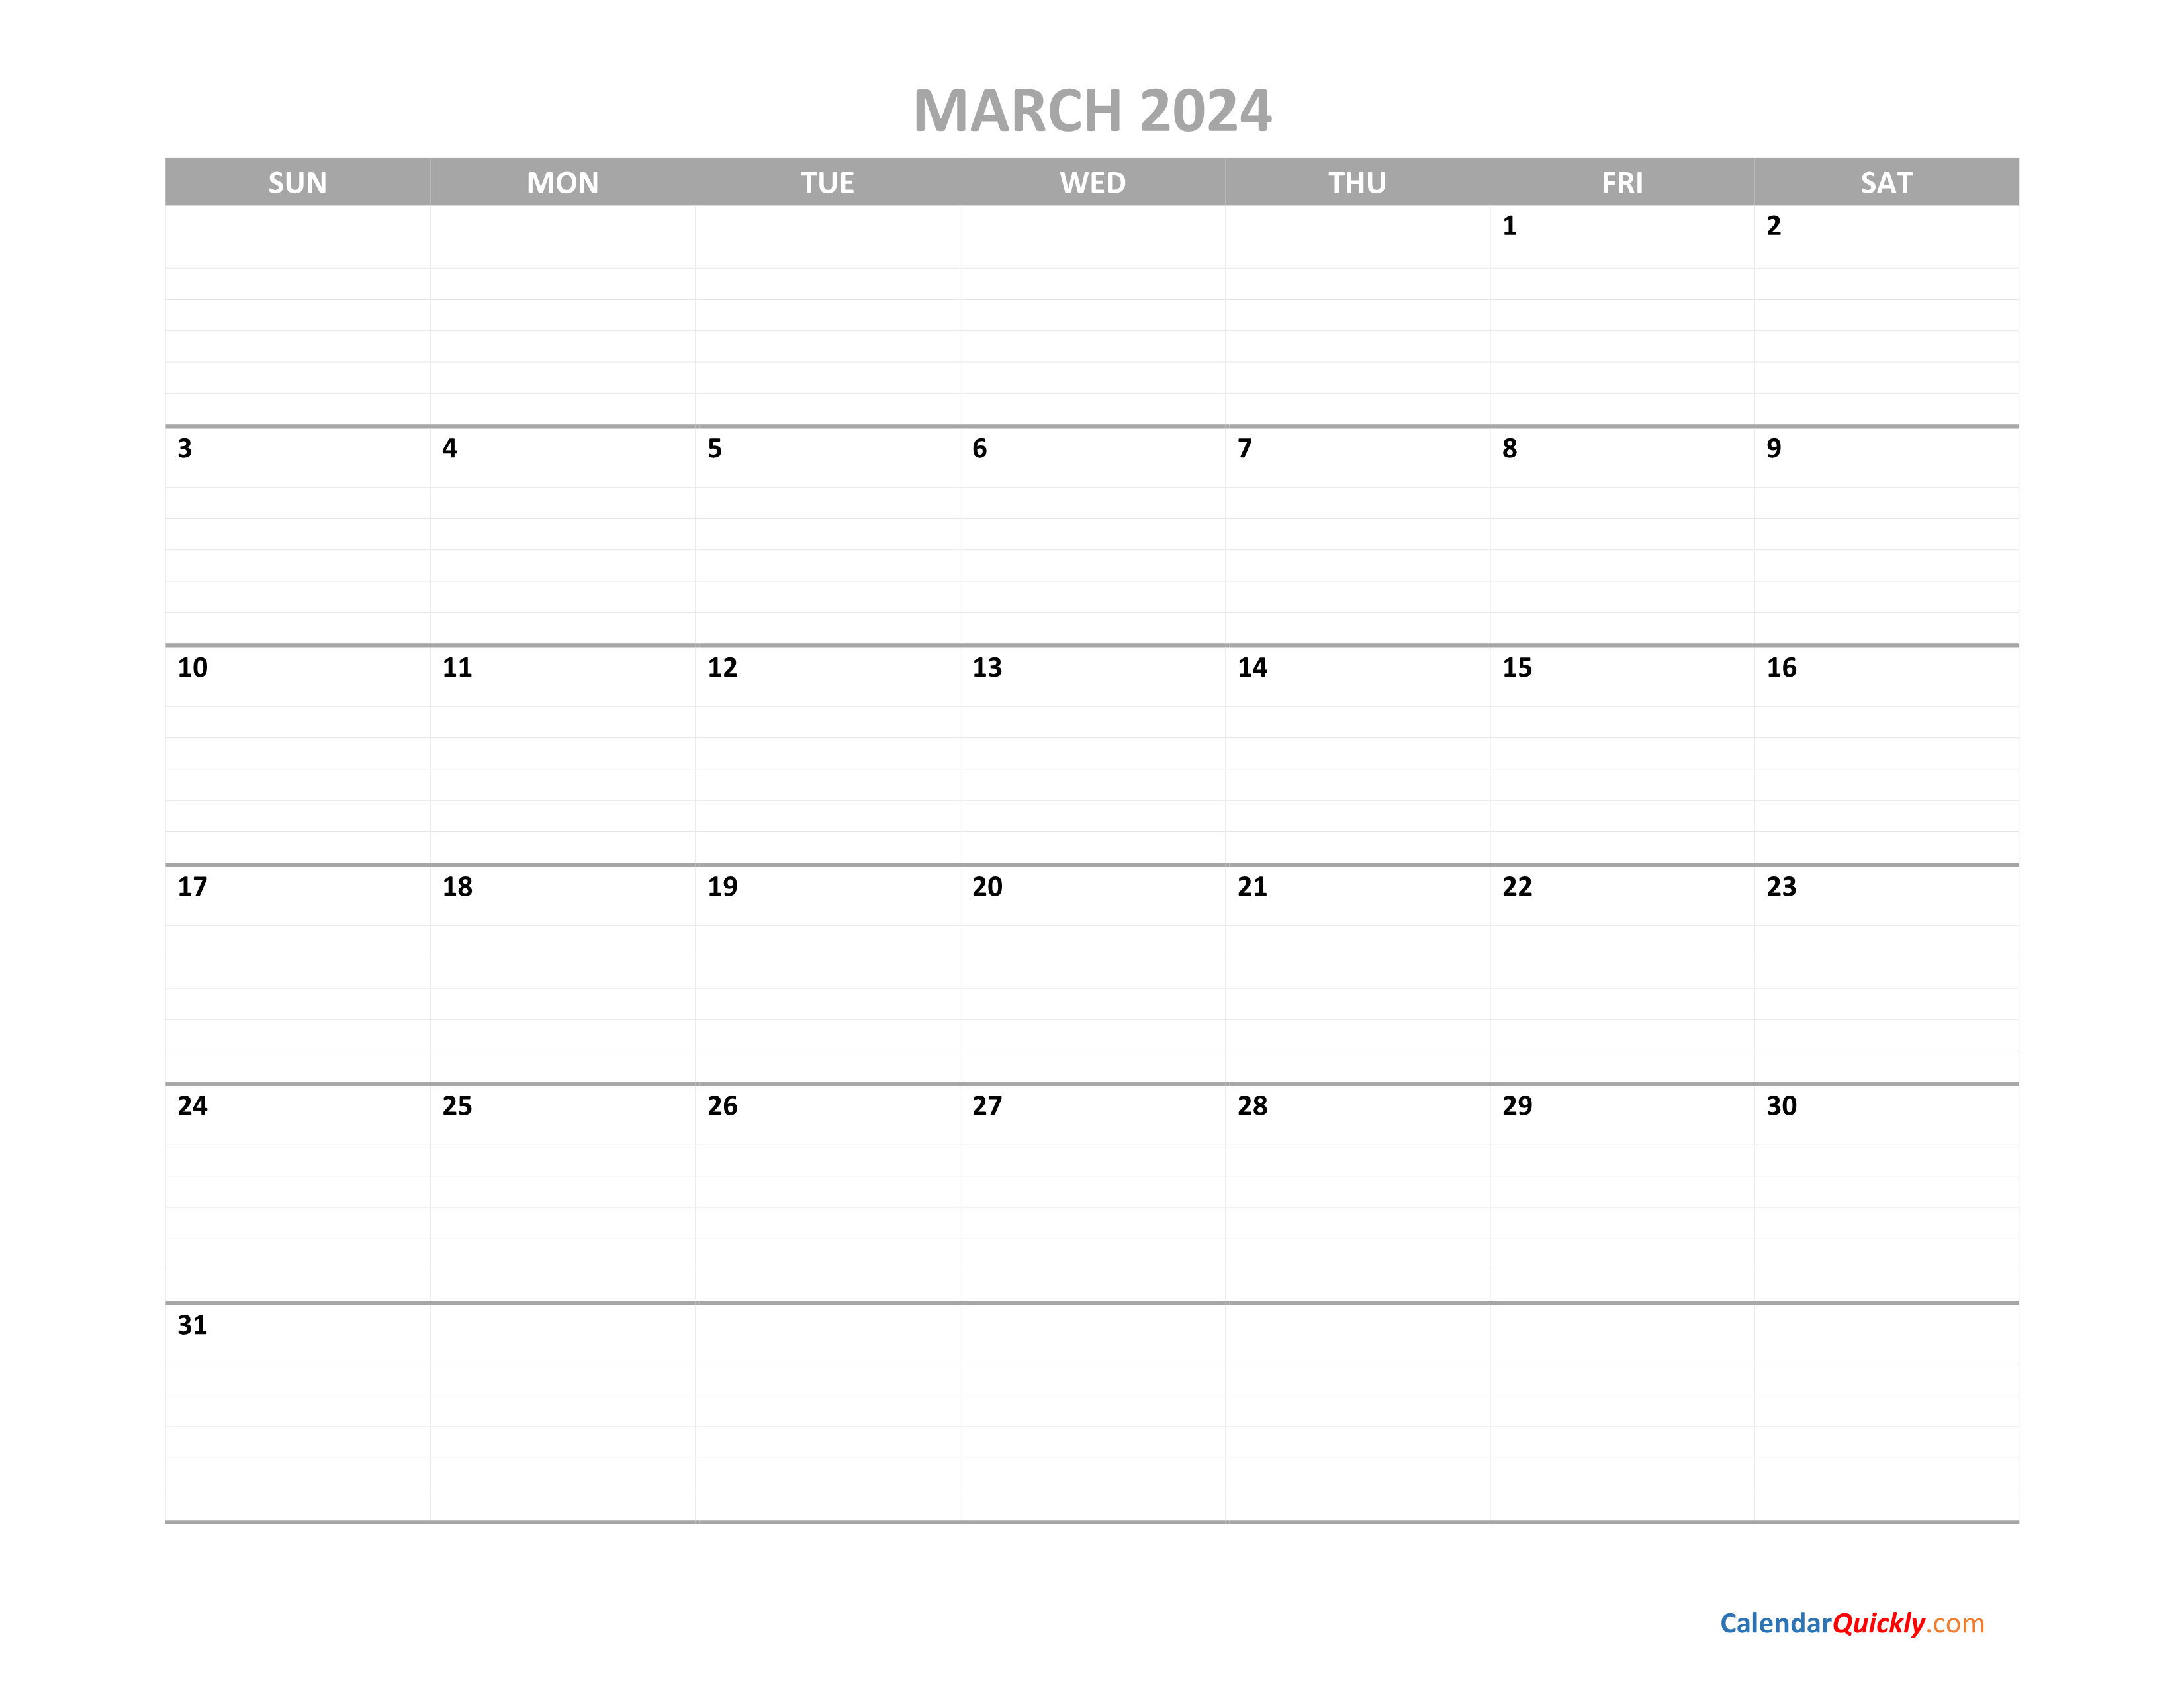 March Calendar 2024 Printable Calendar Quickly